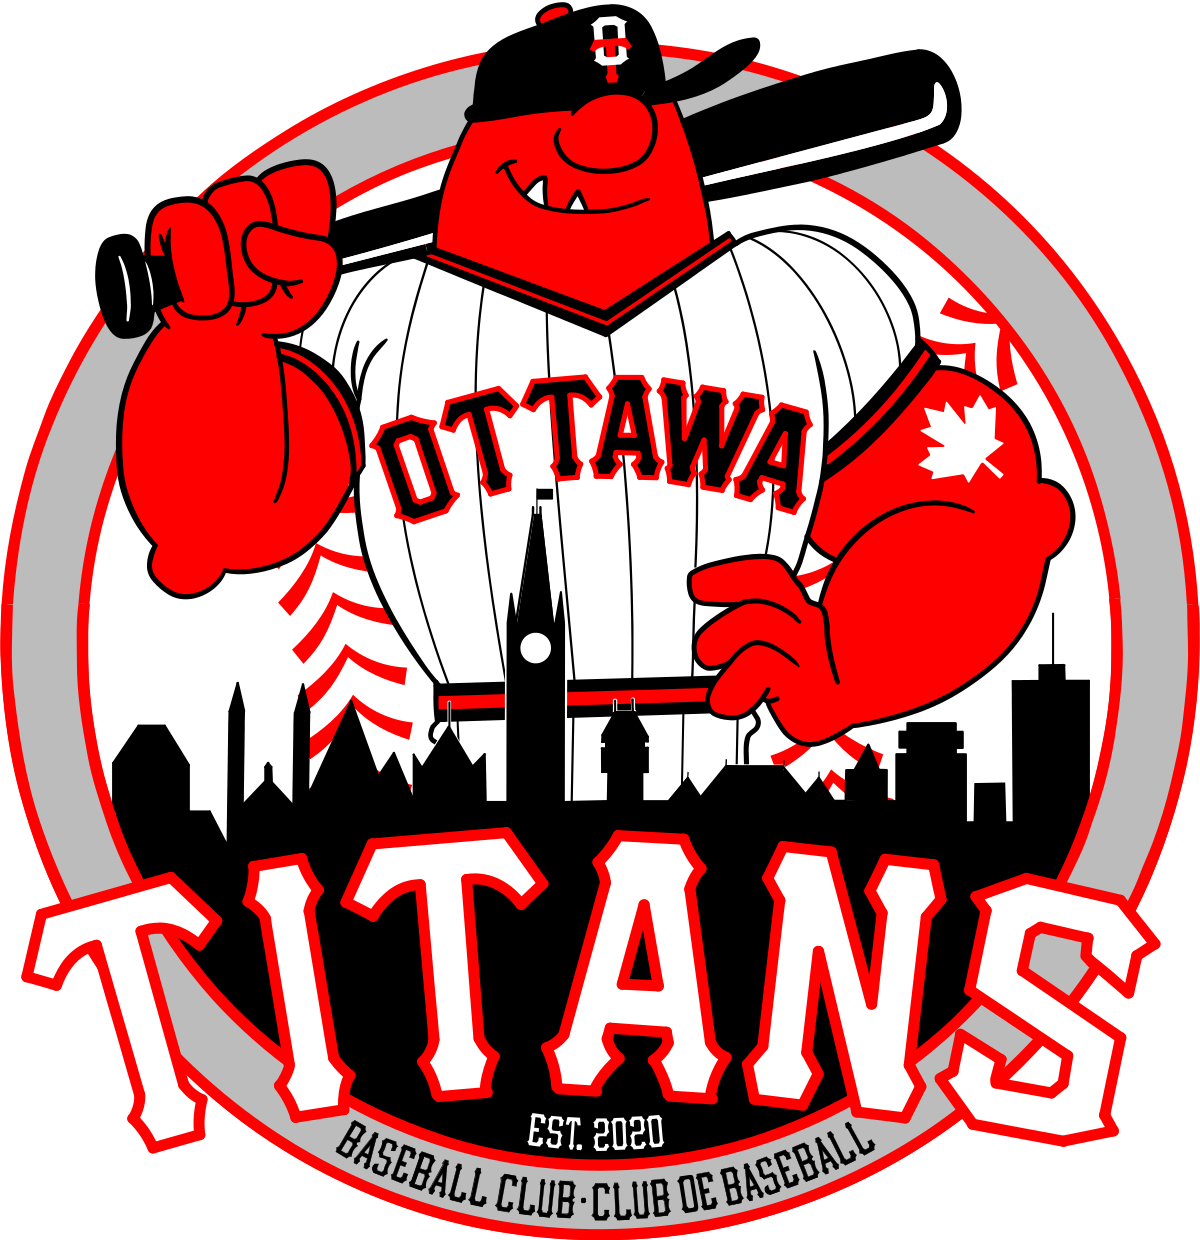 Remember the Titans - Wikipedia